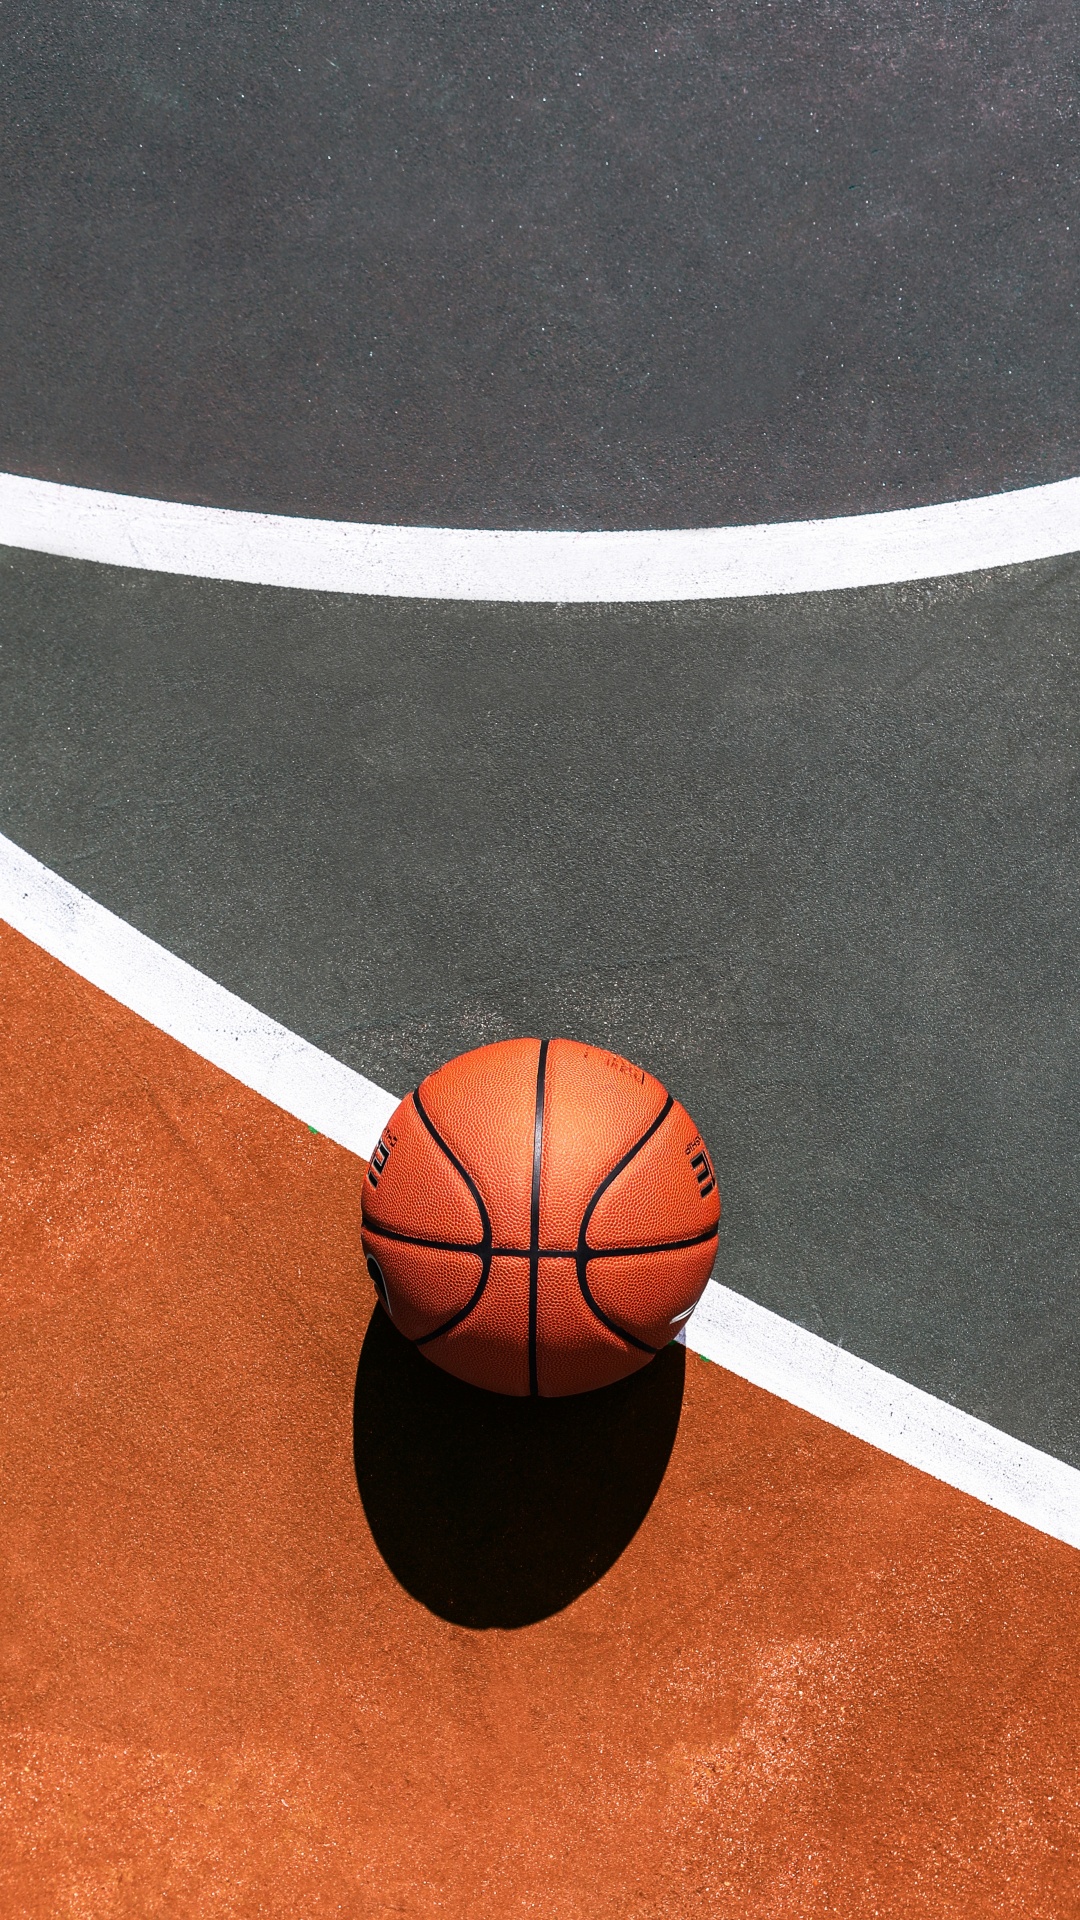 Basket-ball Sur un Terrain de Basket Bleu et Blanc. Wallpaper in 1080x1920 Resolution